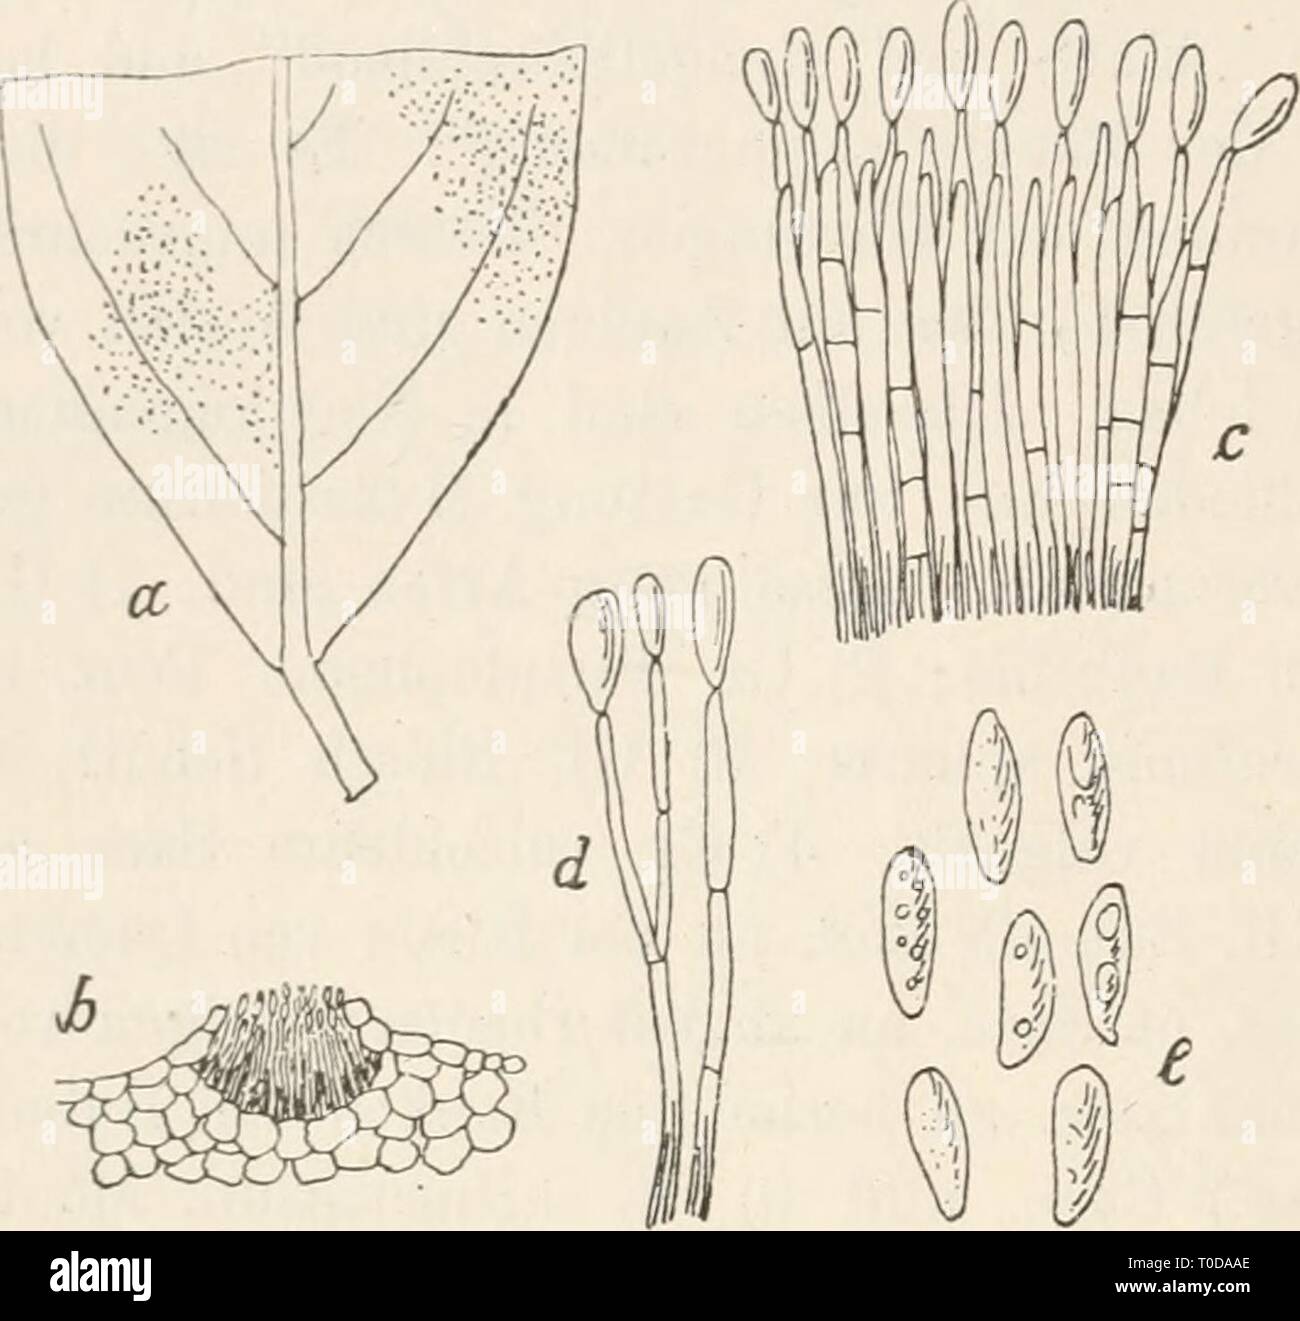 Dr L Rabenhorst's Kryptogamen-Flora von Dr. L. Rabenhorst's Kryptogamen-Flora von Deutschland, Oesterreich und der Schweiz drlrabenhorstskr0107rabe Year: 1903  Acacia 452 Gloeosporium Acacia 4031. 0-1. sphaerelloides Sacc, Mich. I. p. 92; Fung. ital. tab. 85; Syll. IIL p. 709. Sporenlager auf beiden Blattseiten, punktförmig, anfänglich von der Epidermis bedeckt, schwarz; Sporenträger dicht bündelweise, fadenförmig, mit einigen Querwänden, fast einfach, 40—50 fi lang, Gloeosporium sphaerelloides Sacc. a. Tlieil eines Blattes von Hoya carnosa mit dem Pilze in natürlicher Grösse. h. Ein schwach v Stock Photo